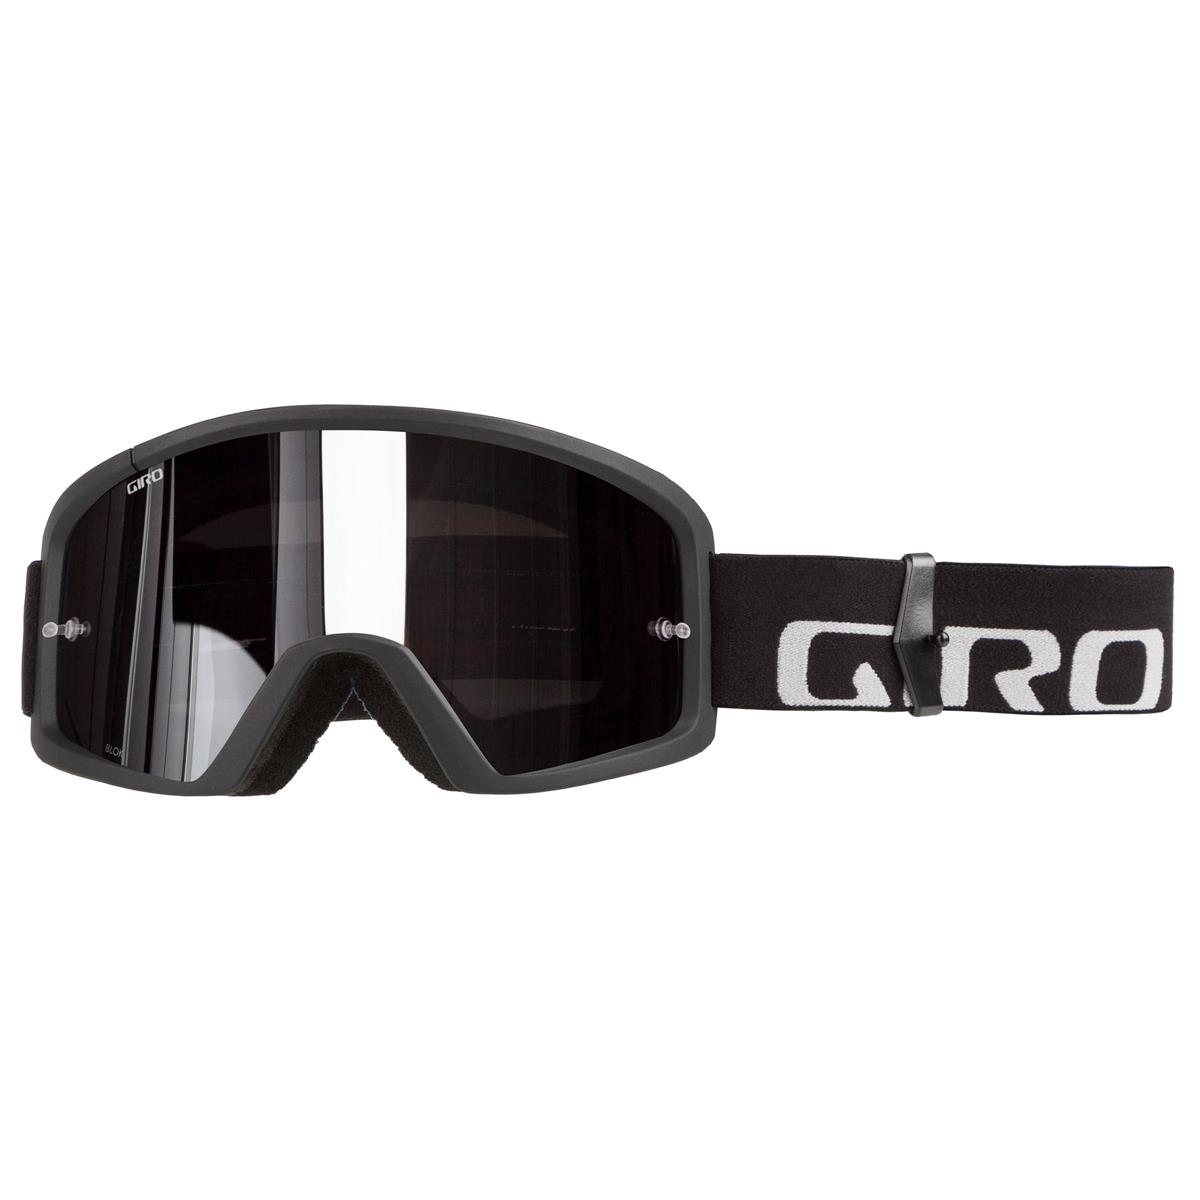 Giro Goggle Blok Black/Grey - Grey/Silver Flash Clear Anti-Fog